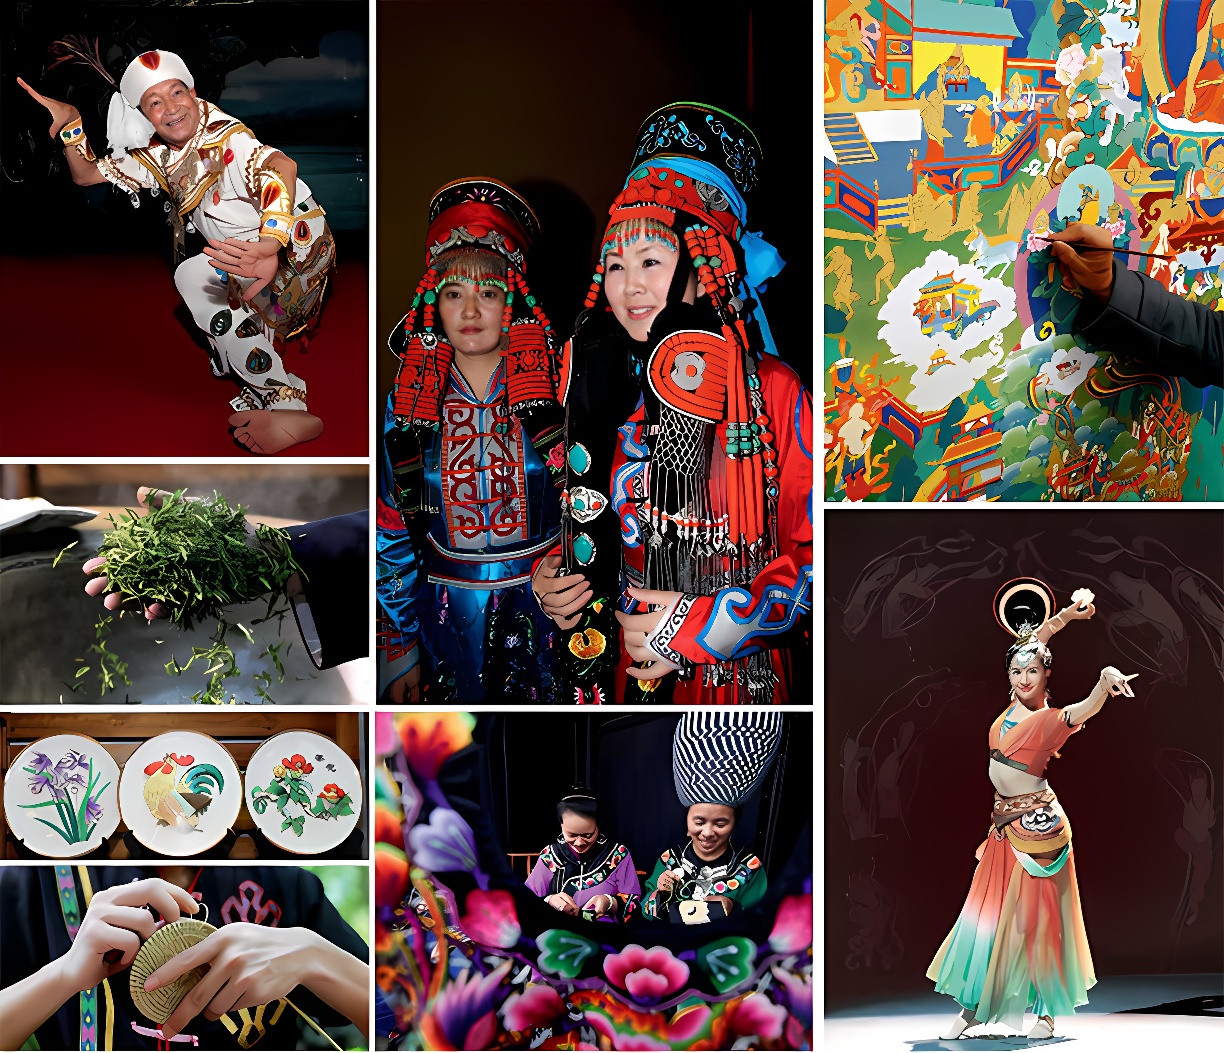 图片展示多元文化场景：欢乐的节日庆典、传统民族服饰、艺术创作、农业劳作、烹饪过程以及优雅的舞蹈表演。